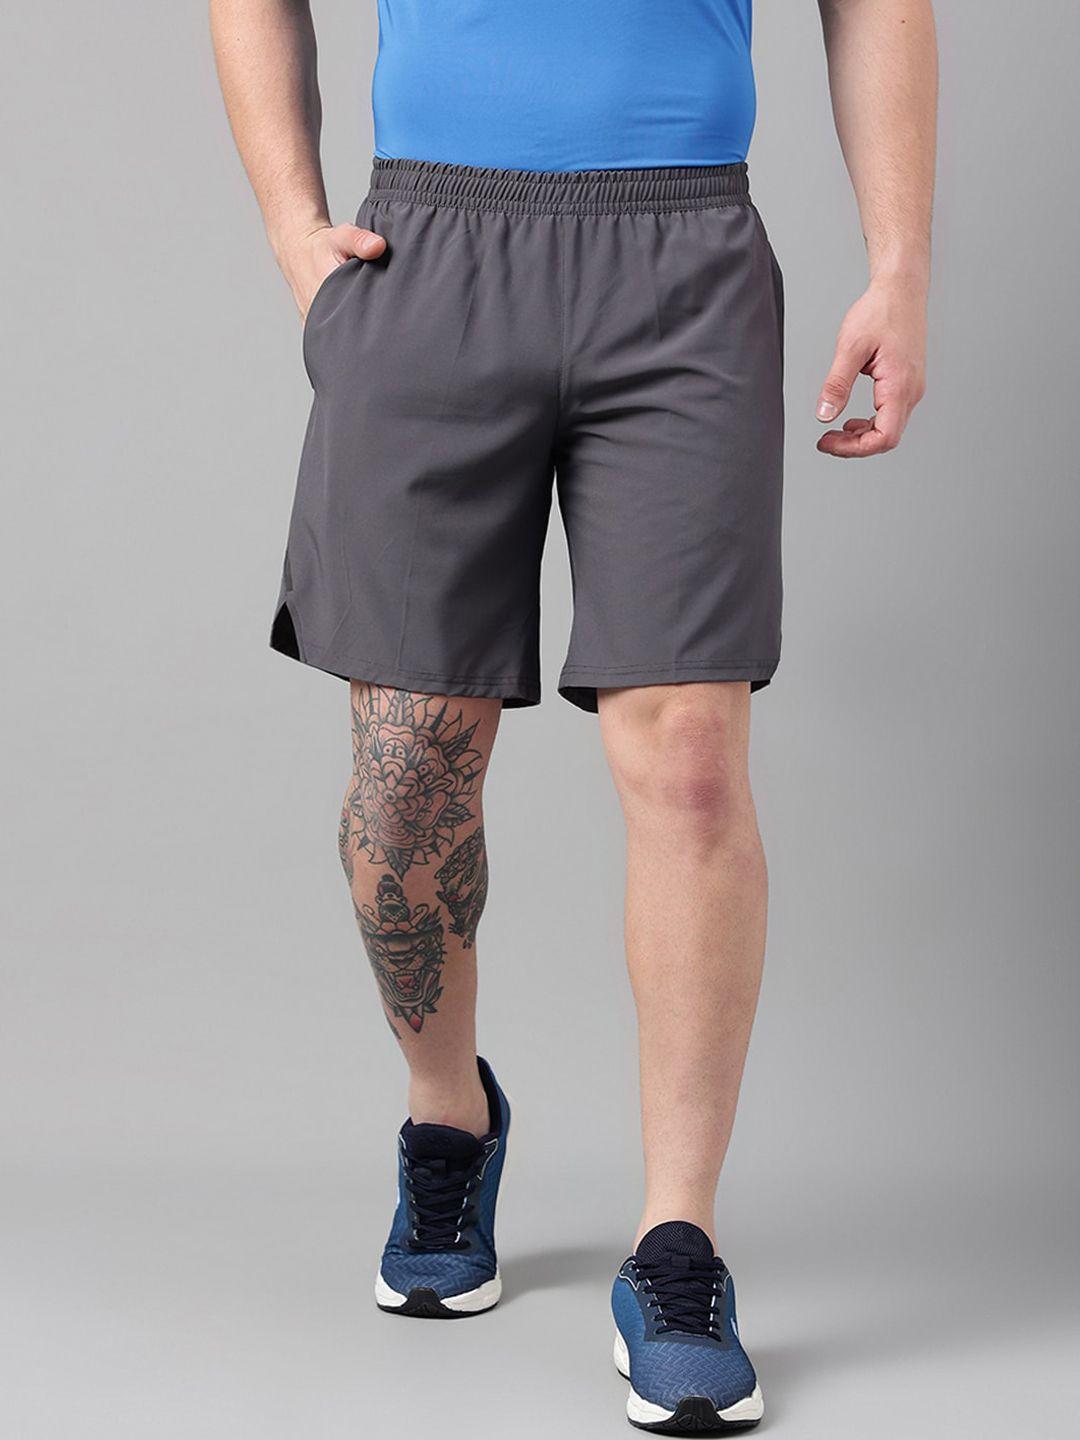 unpar men mid-rise sports shorts